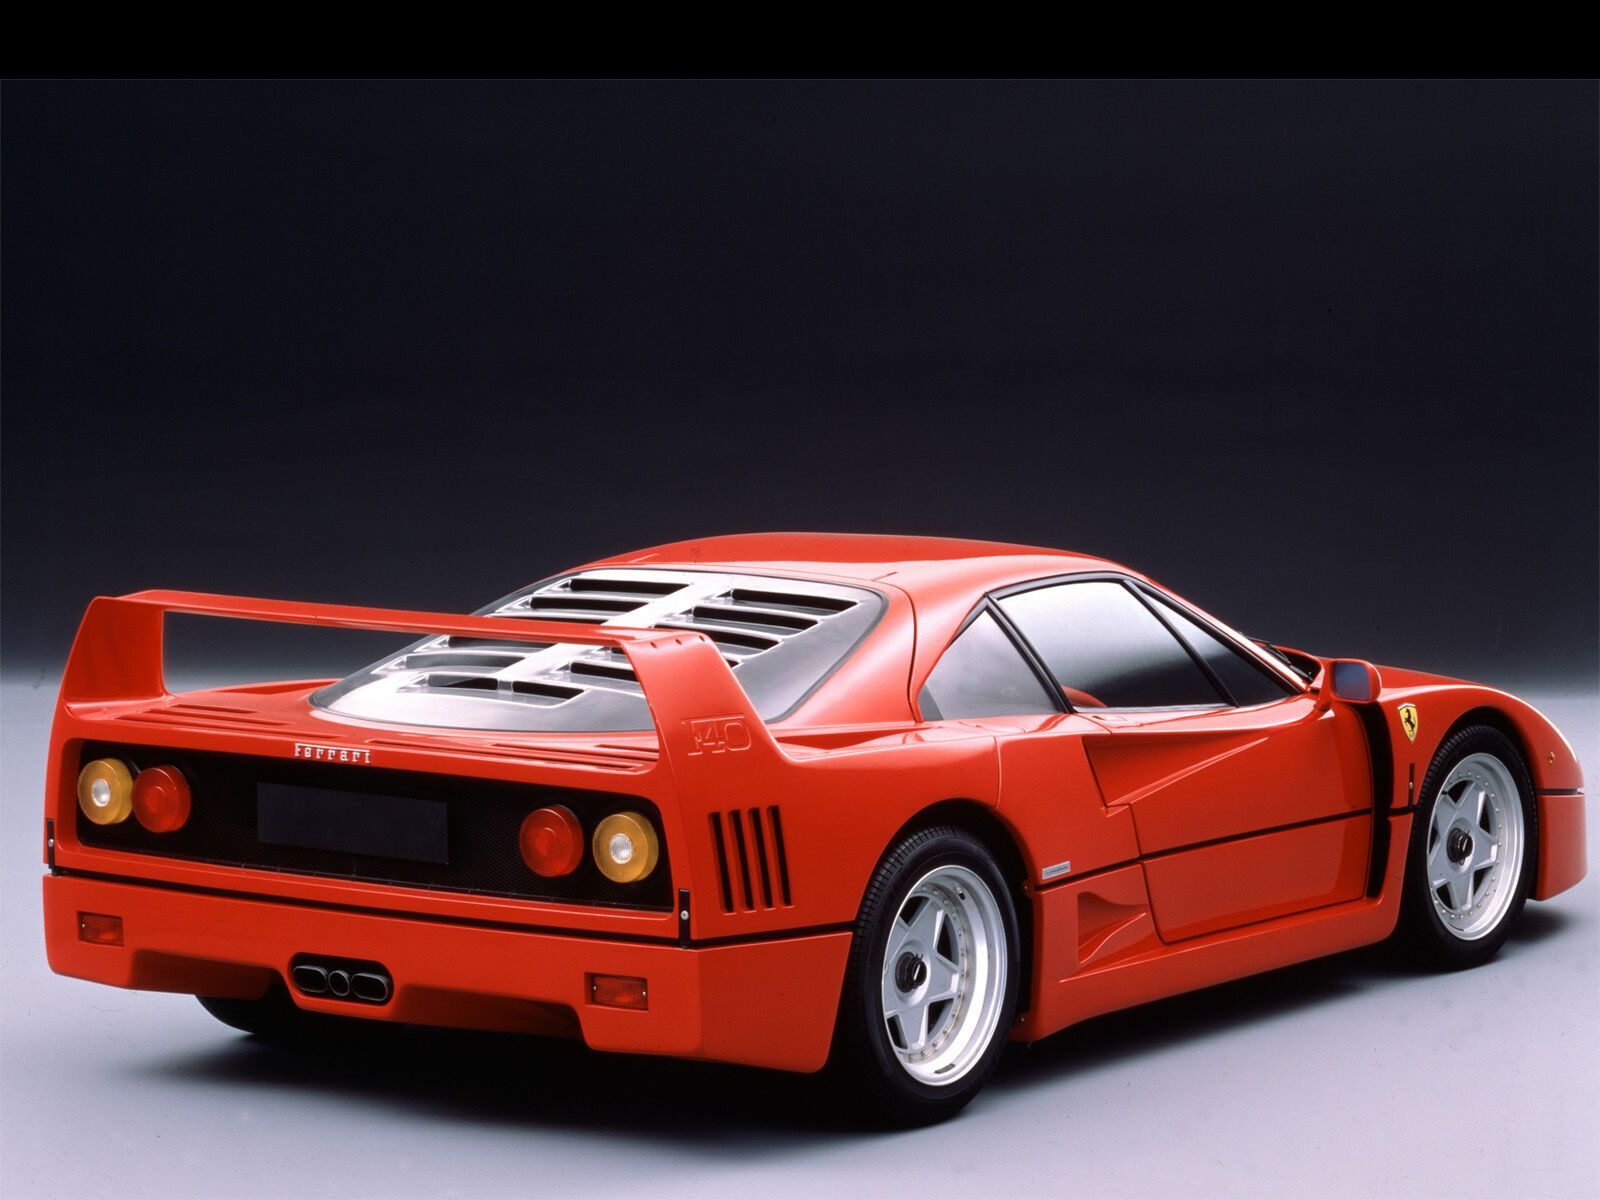 Ferrari F40 изначально был красным